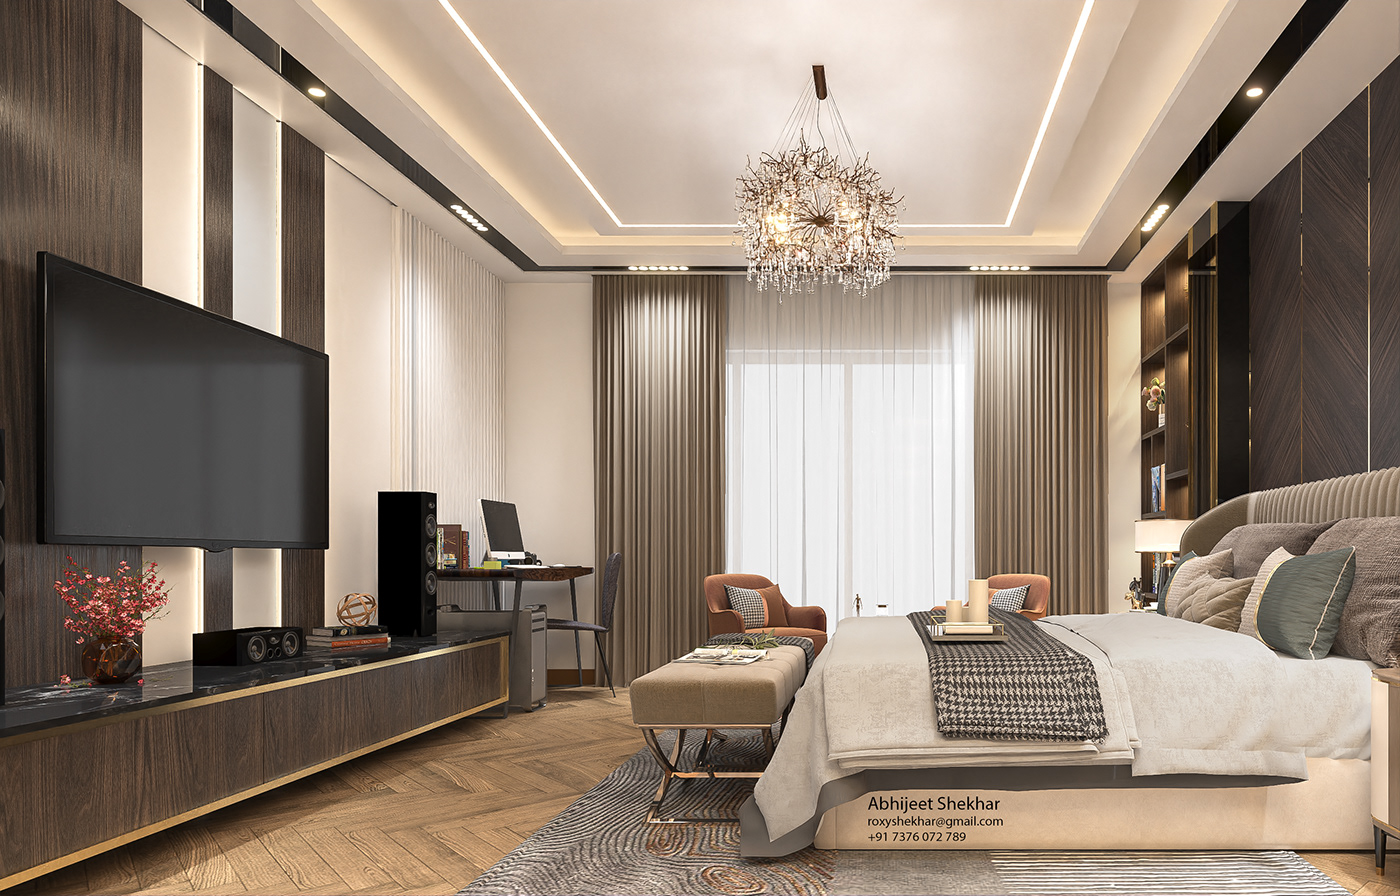 3D Rendering 3D Visualization bedroom bedroom design Bedroom interior bedroomdesign Interior interior design  interiordesign interiors